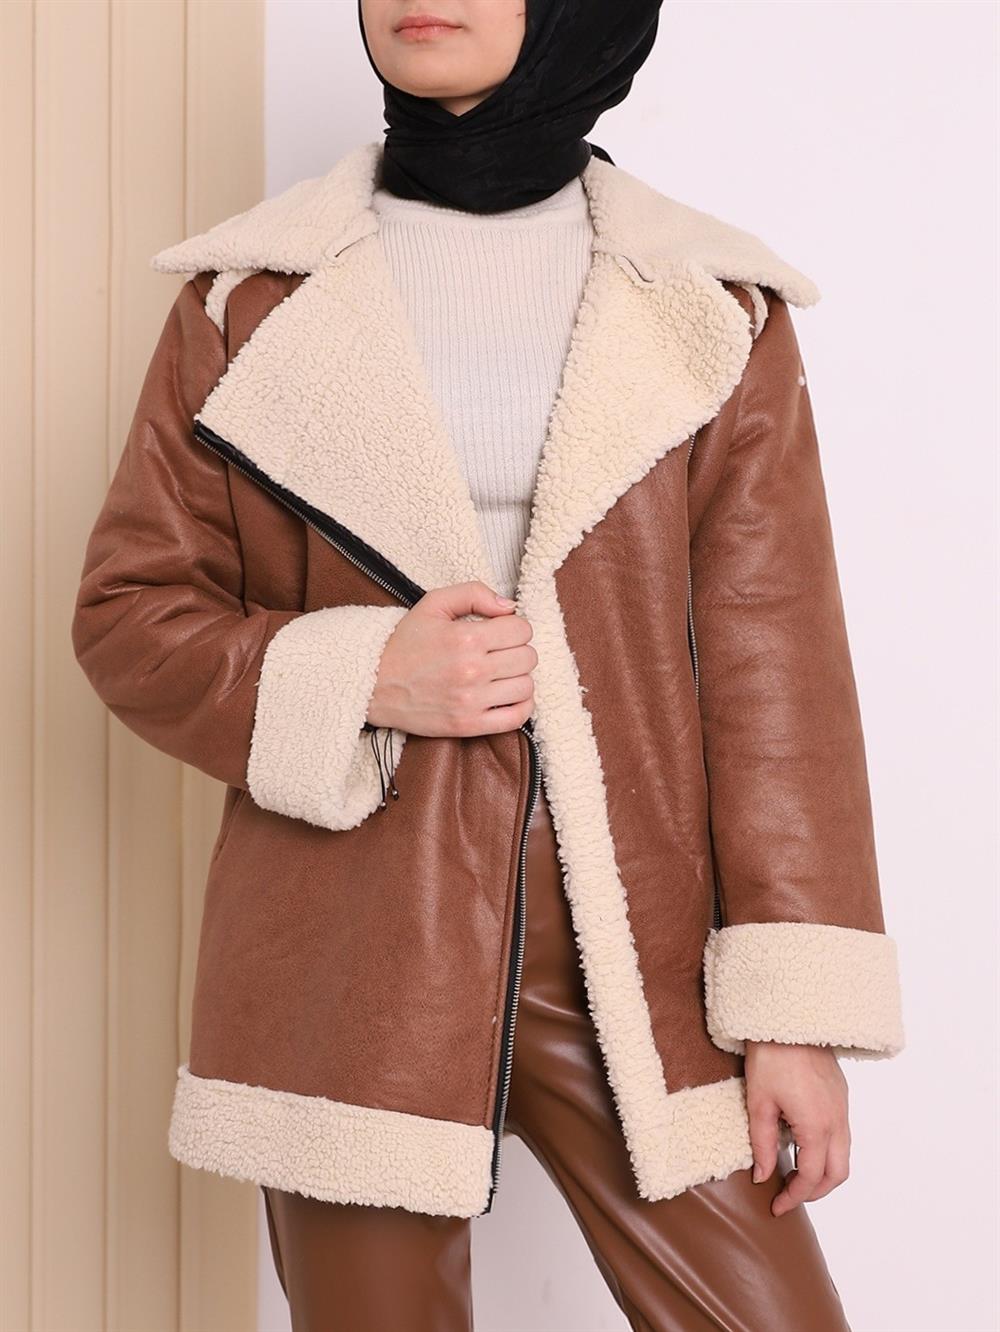 Kuzu Peluş Nubuk Deri Kalın Kışlık Mont -Taba - 246-8351-R12 | Şamdan Marka  İçi Kürklü Mont Modelleri | Kadın Tesettür Giyim - KaliteMall.com